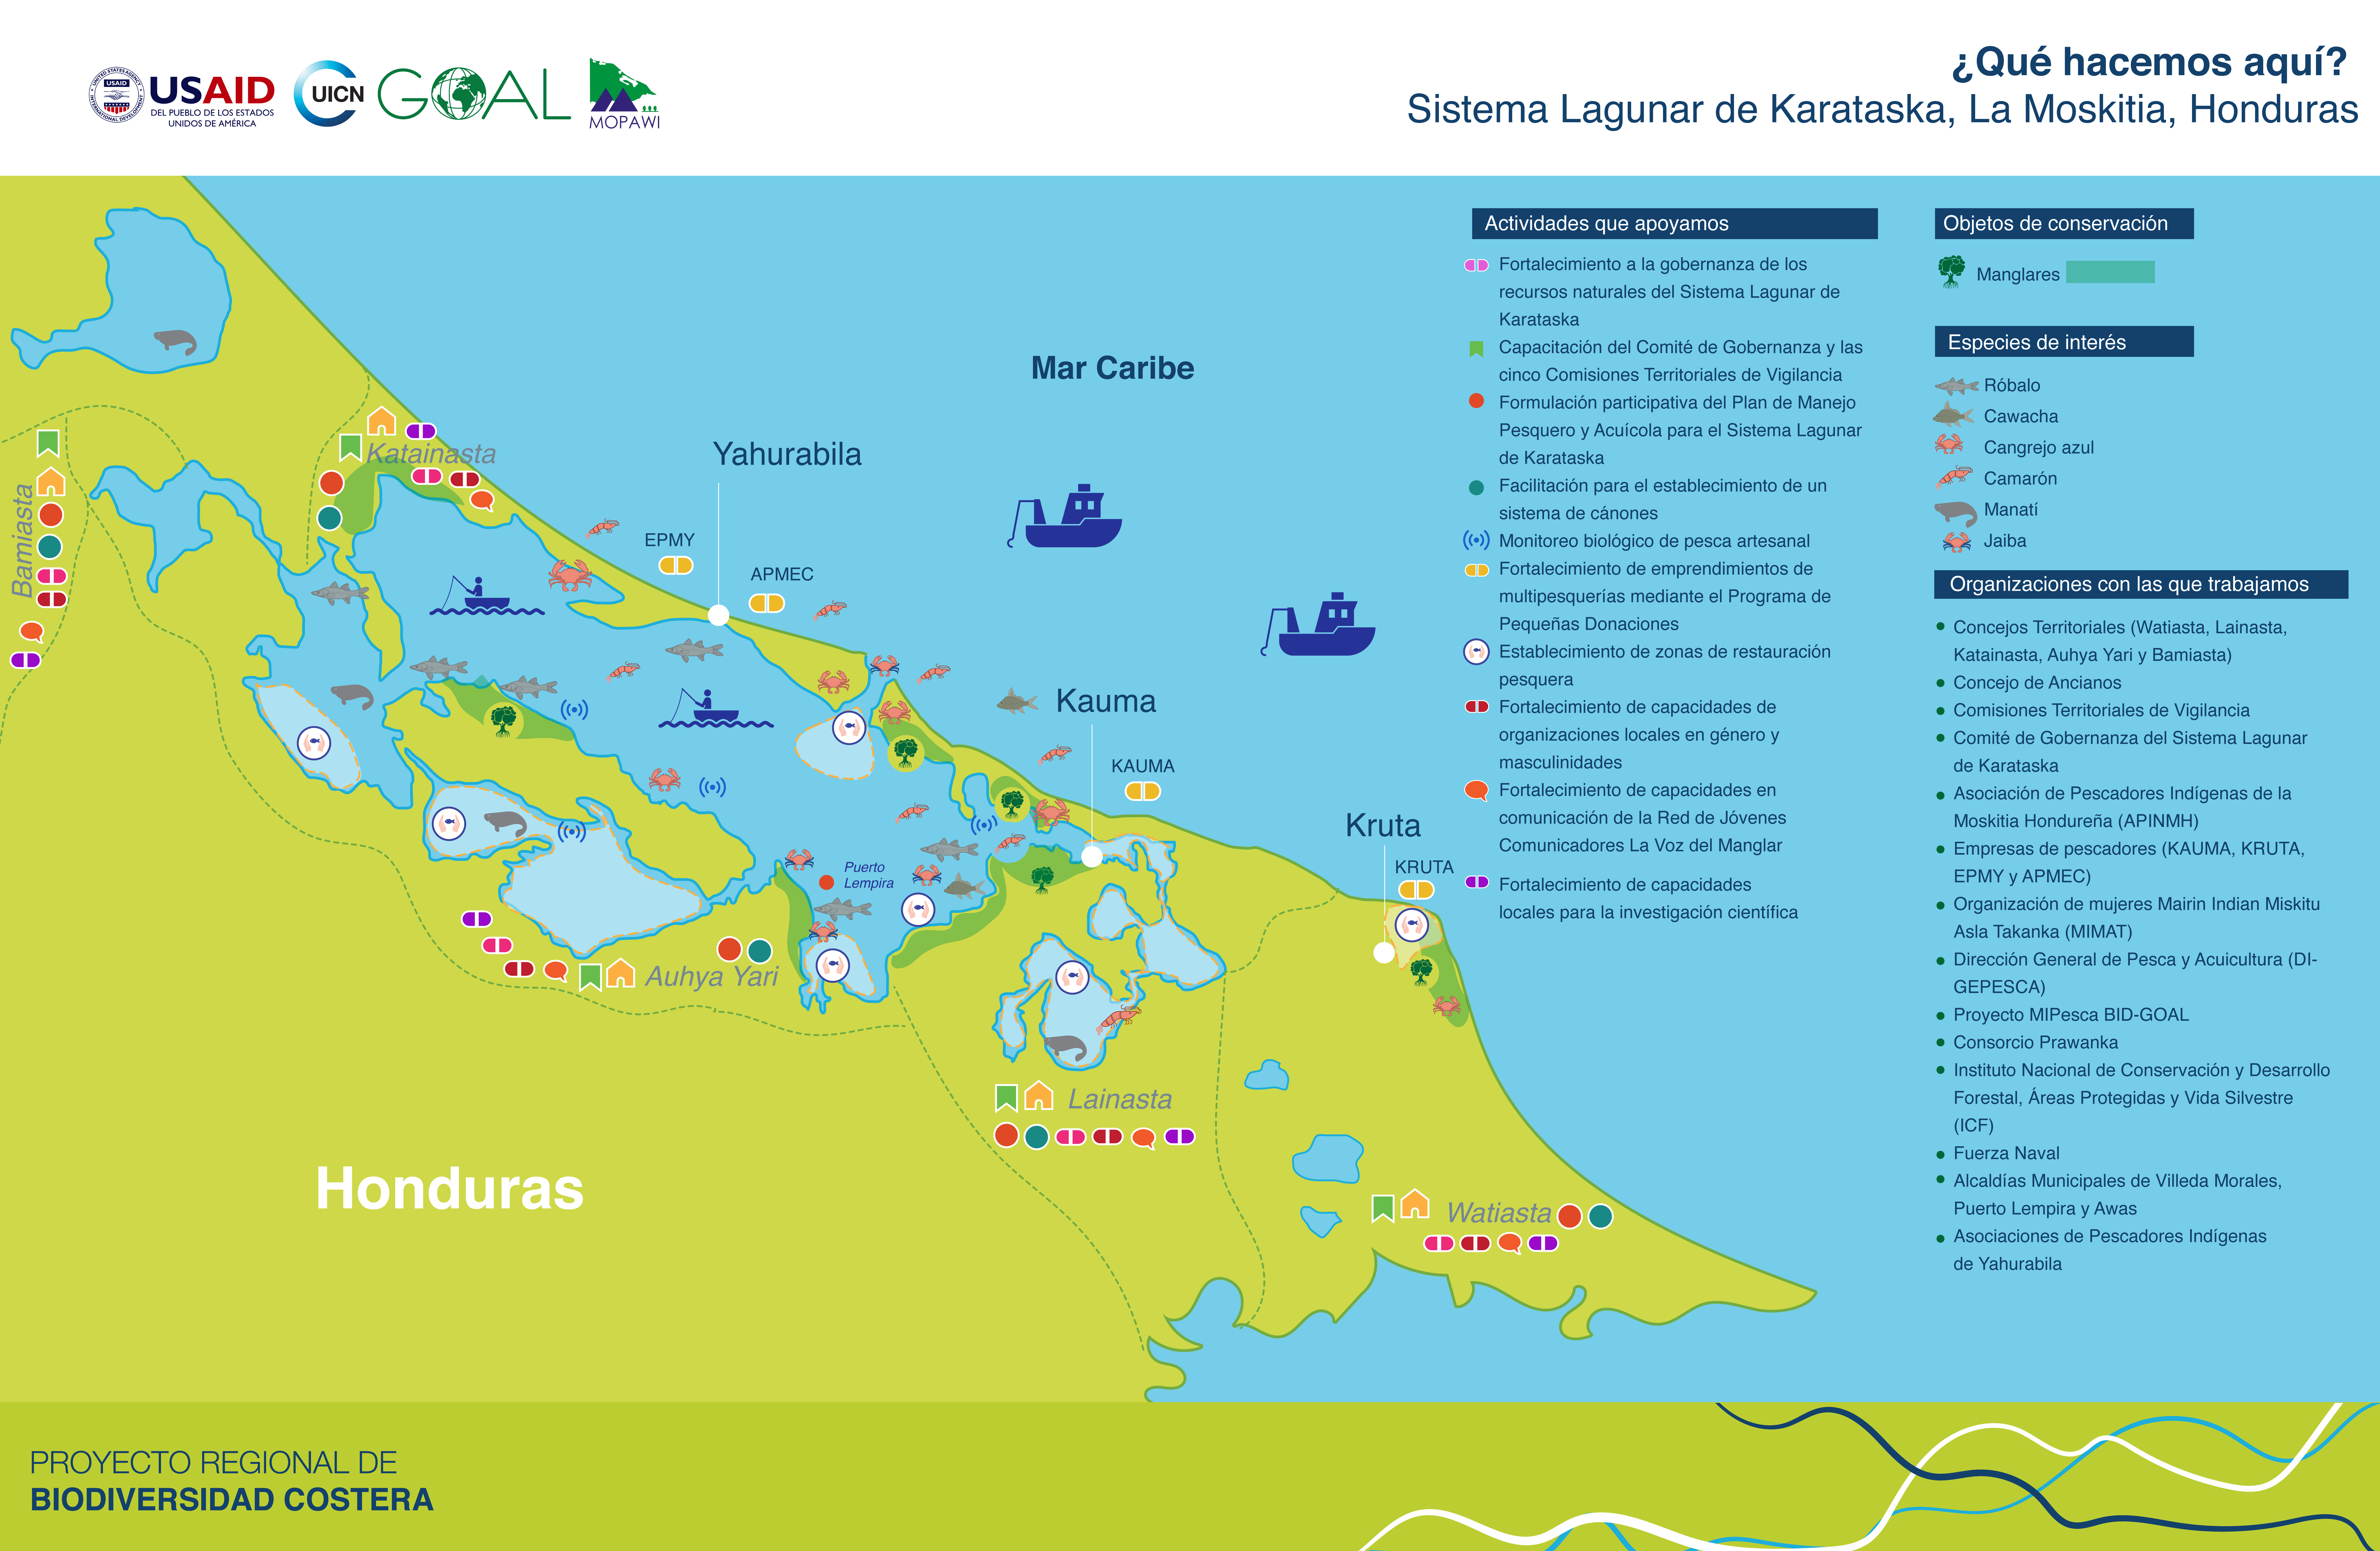 Logros del Proyecto Regional de Biodiversidad Costera aportó en La Moskitia hondureña